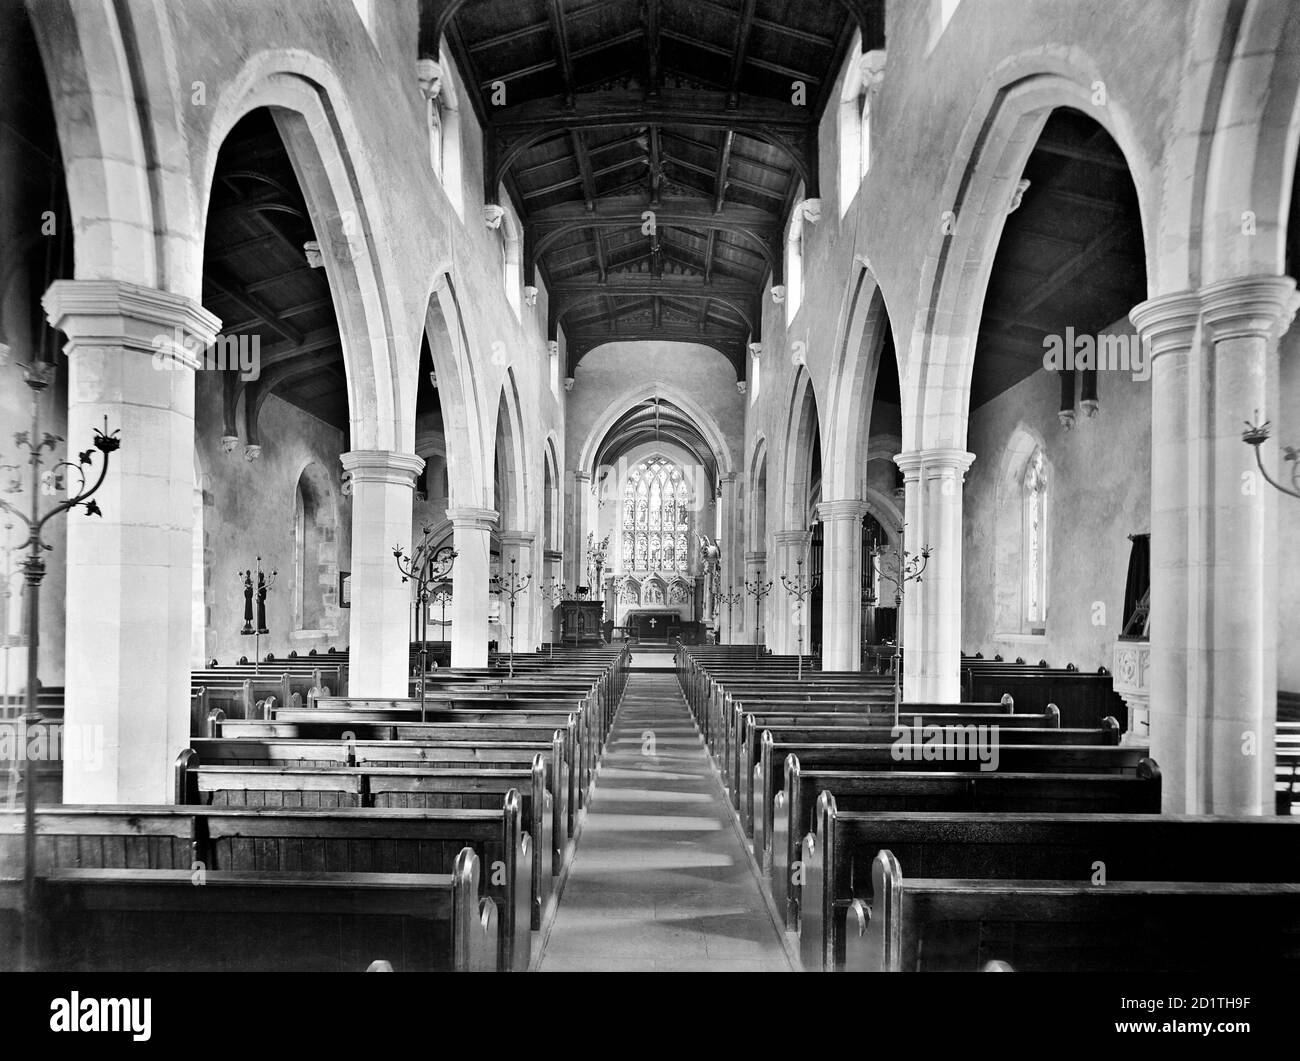 ST MARYS CHURCH, Amersham, Buckinghamshire. L'interno della chiesa, originariamente risalente al 13 ° secolo, guardando a est lungo la navata navata verso il coro. Fotografato da Henry Taunt (attivo 1860-1922). Foto Stock